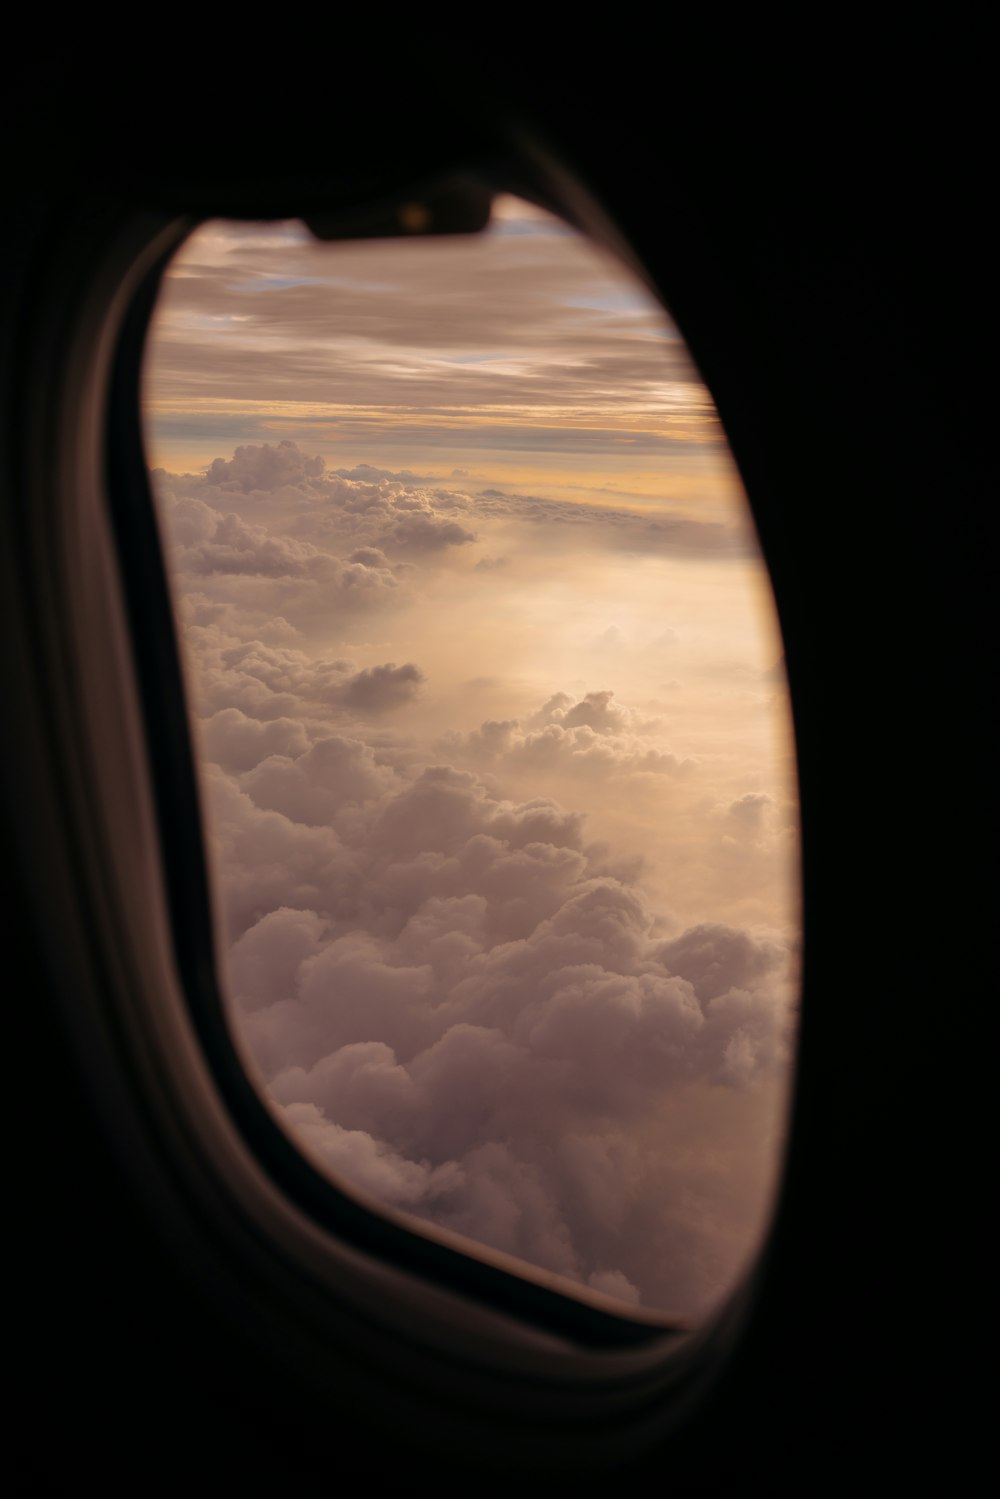 Fotografía de silueta de ventana de avión